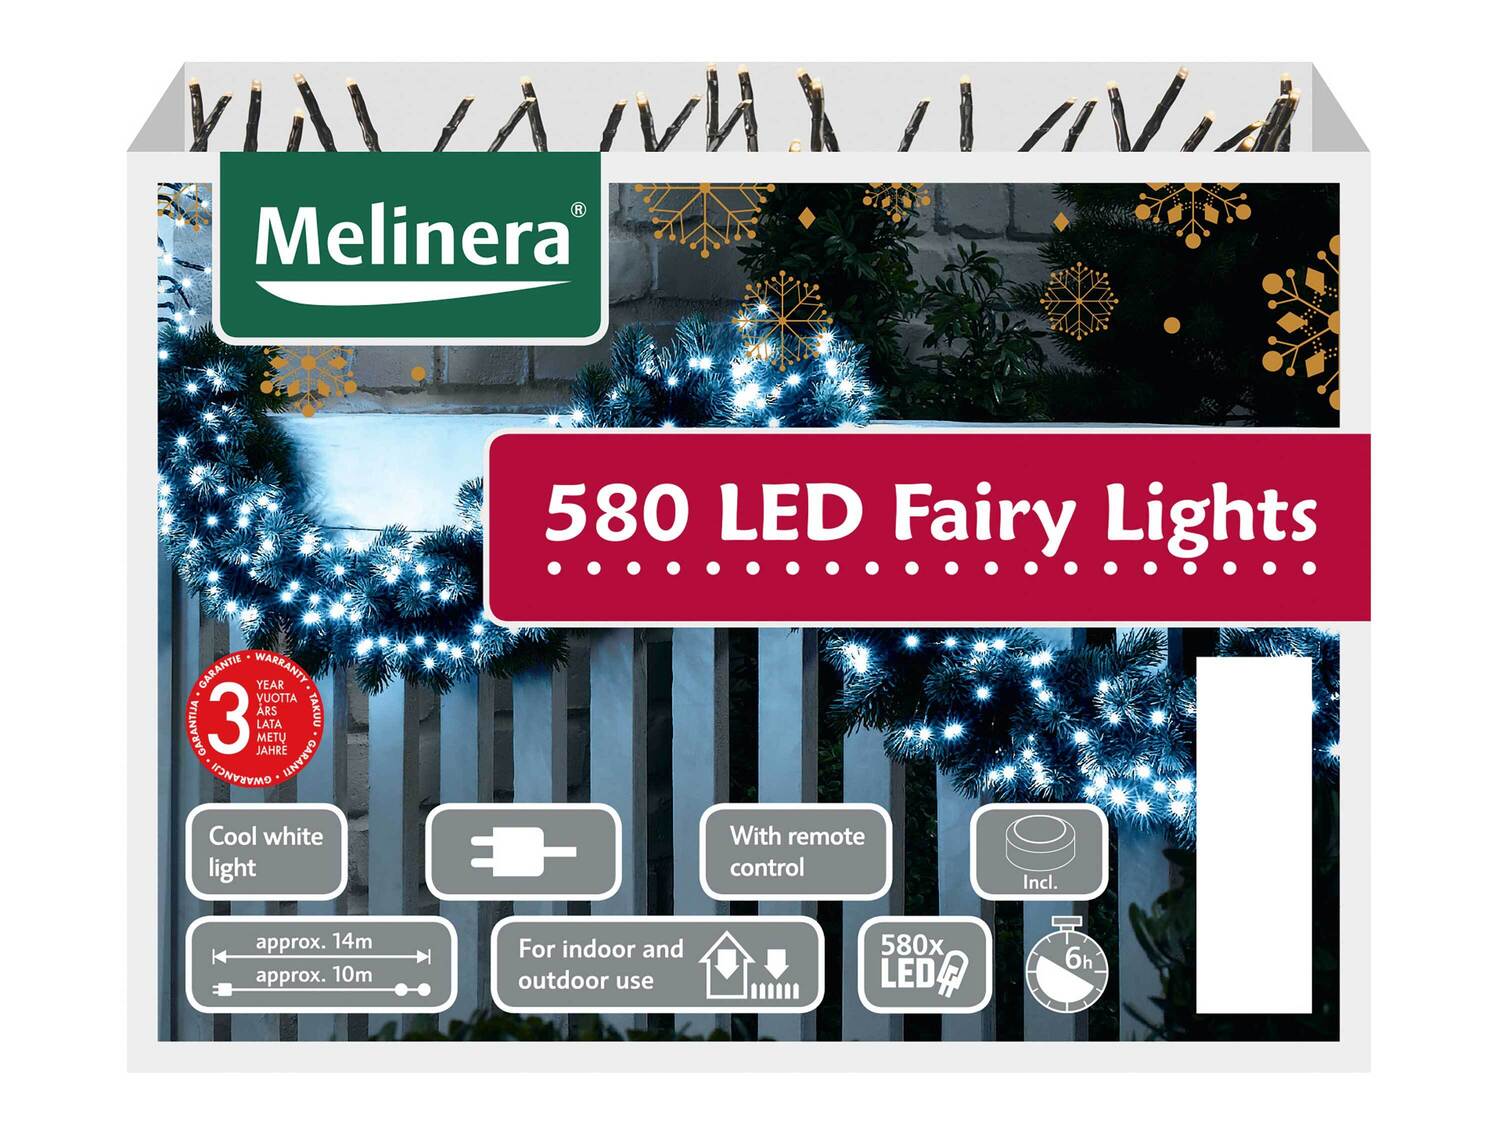 Girlanda świetlna LED , cena 59,90 PLN 
3 wzory 
- możliwość zdalnego sterowania
- ...